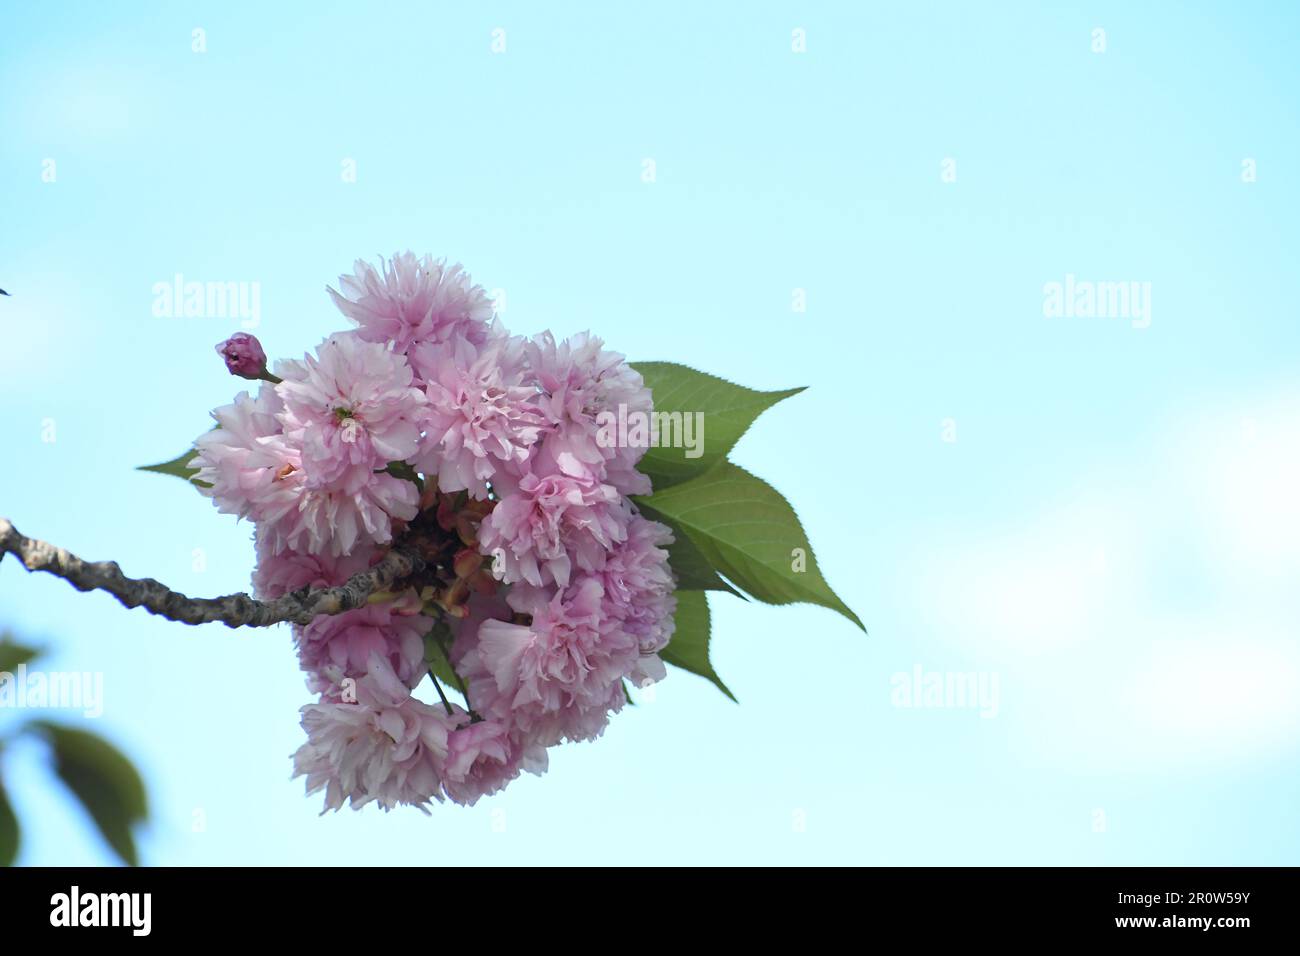 Rosa bouquet doppio ciliegio ramo superiore con foglie come un biglietto di auguri floreale o carta da parati HD, fiore di ciliegio primavera. Foto stock di doppio fiore di ciliegio. Foto Stock